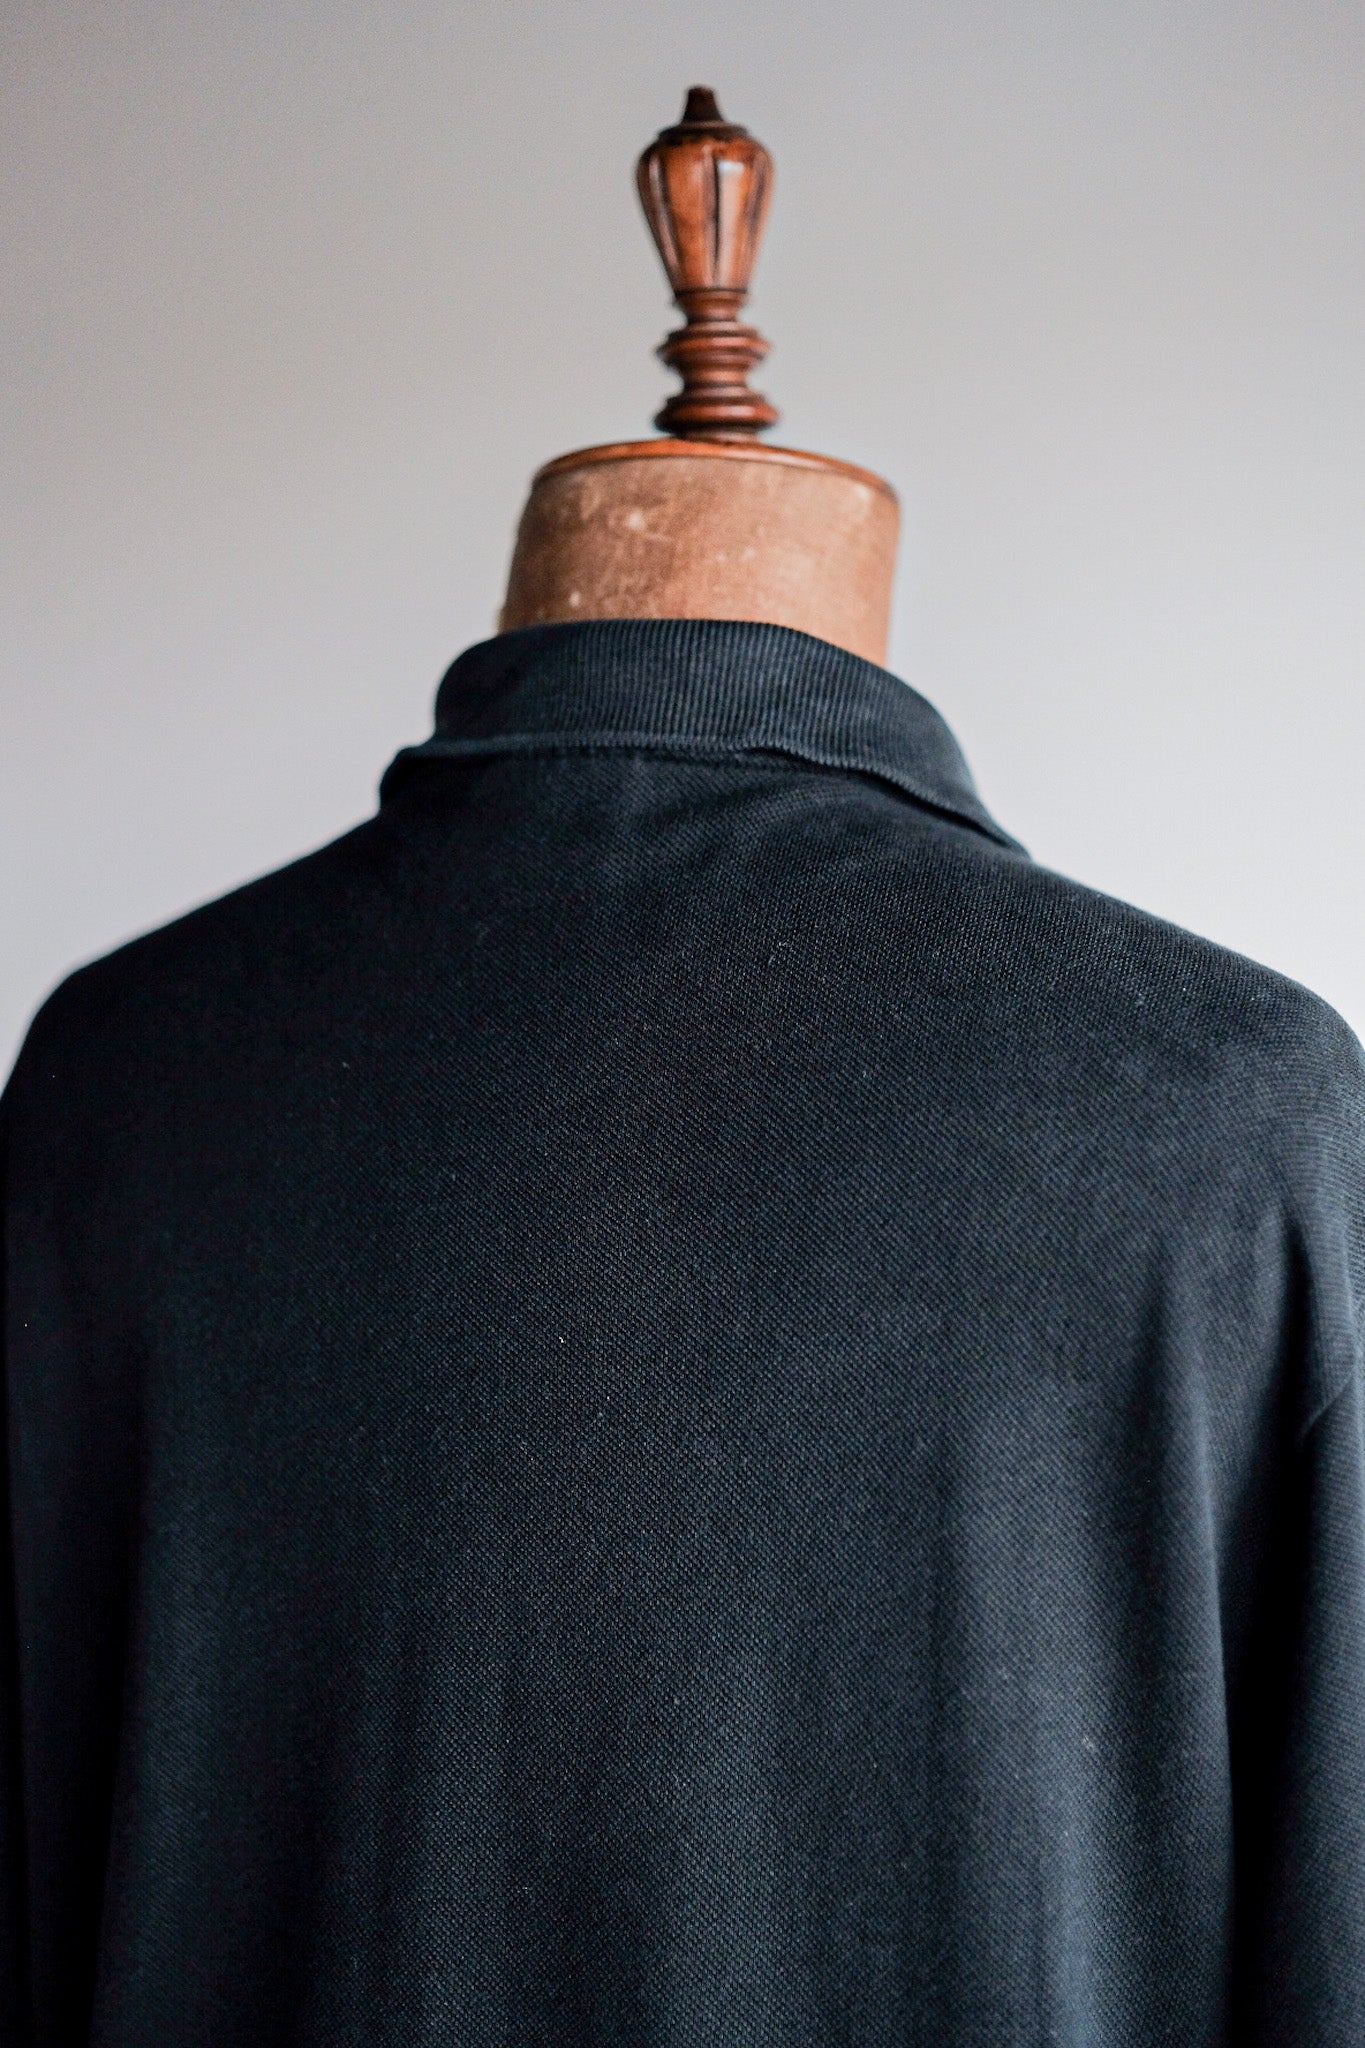 [〜80年代]顏料Lacoste l/s polo襯衫尺寸。5“黑色”